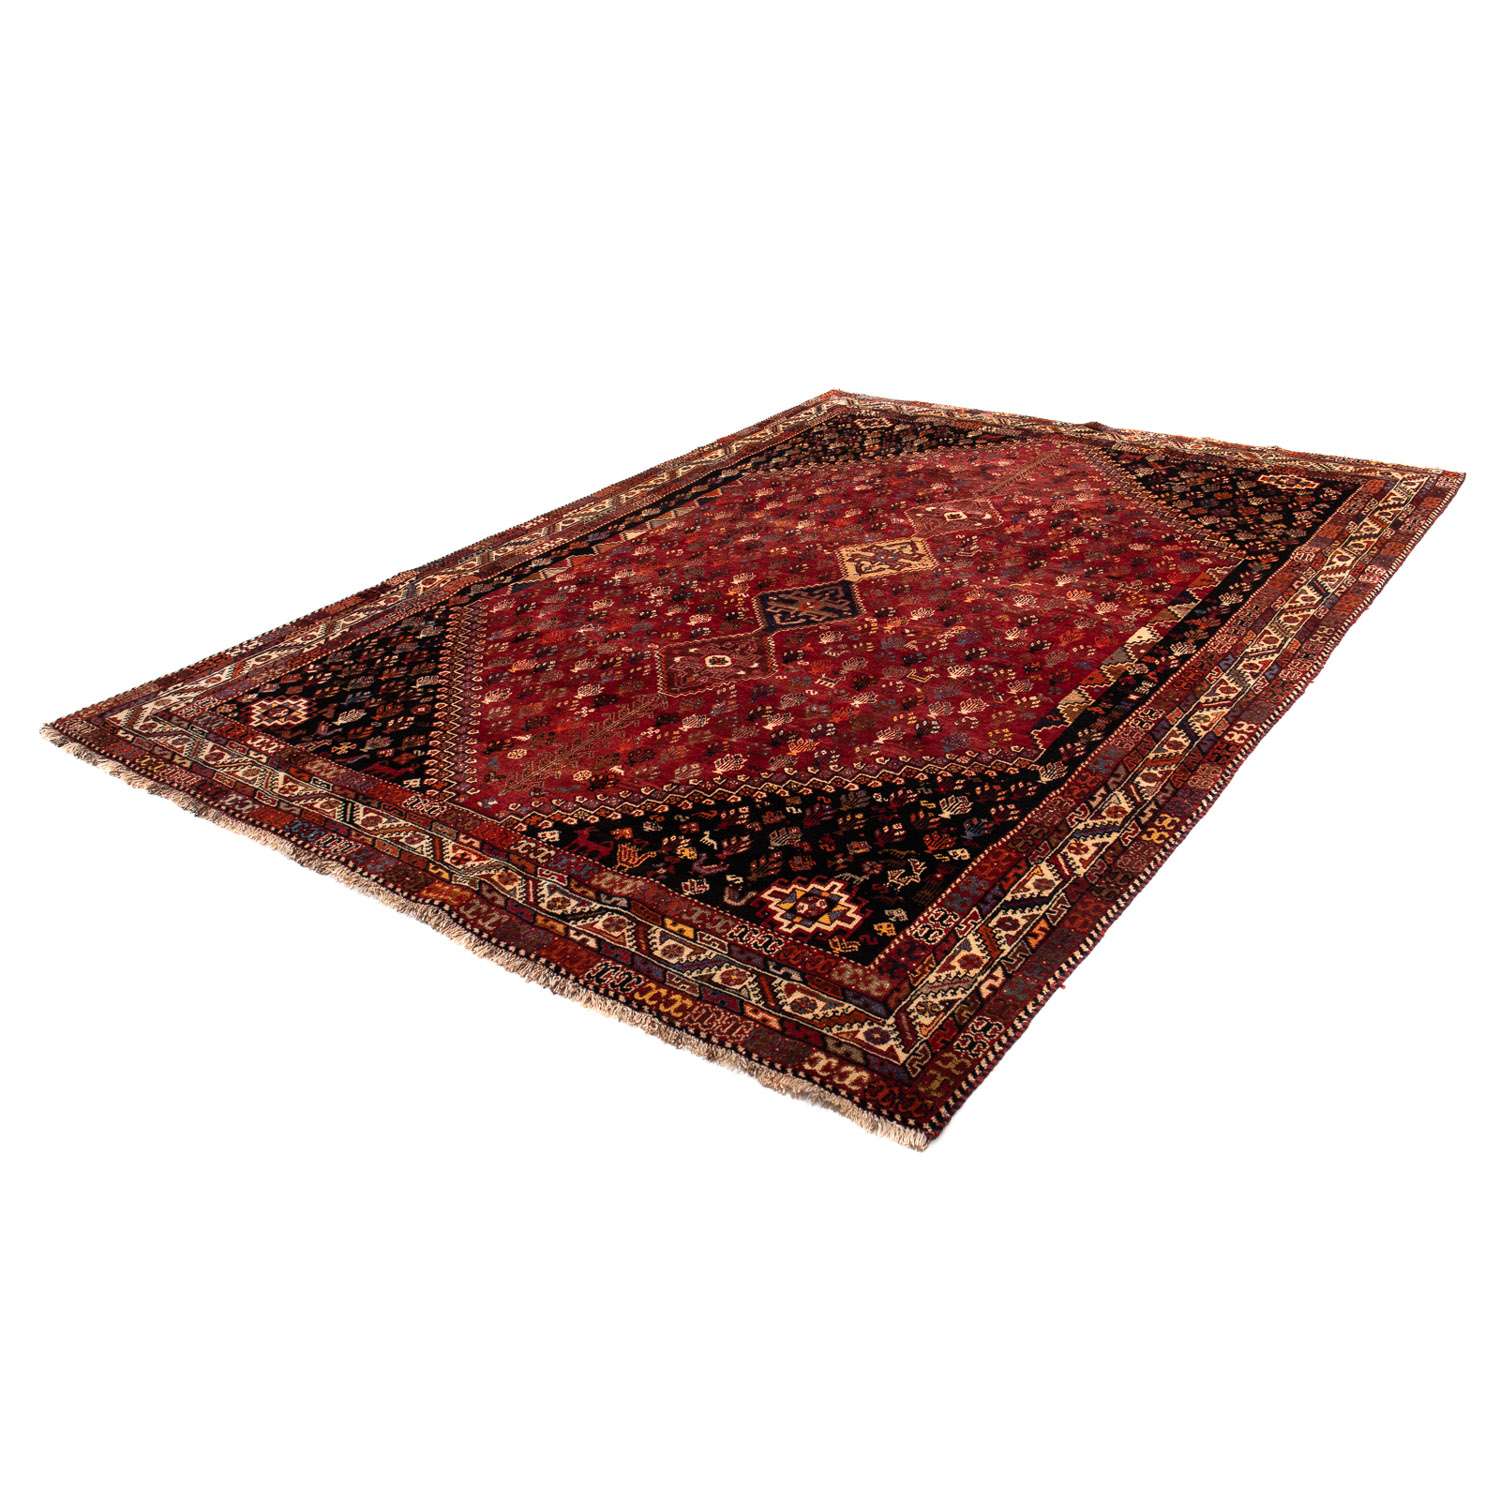 Alfombra persa - Nómada - 315 x 216 cm - rojo oscuro